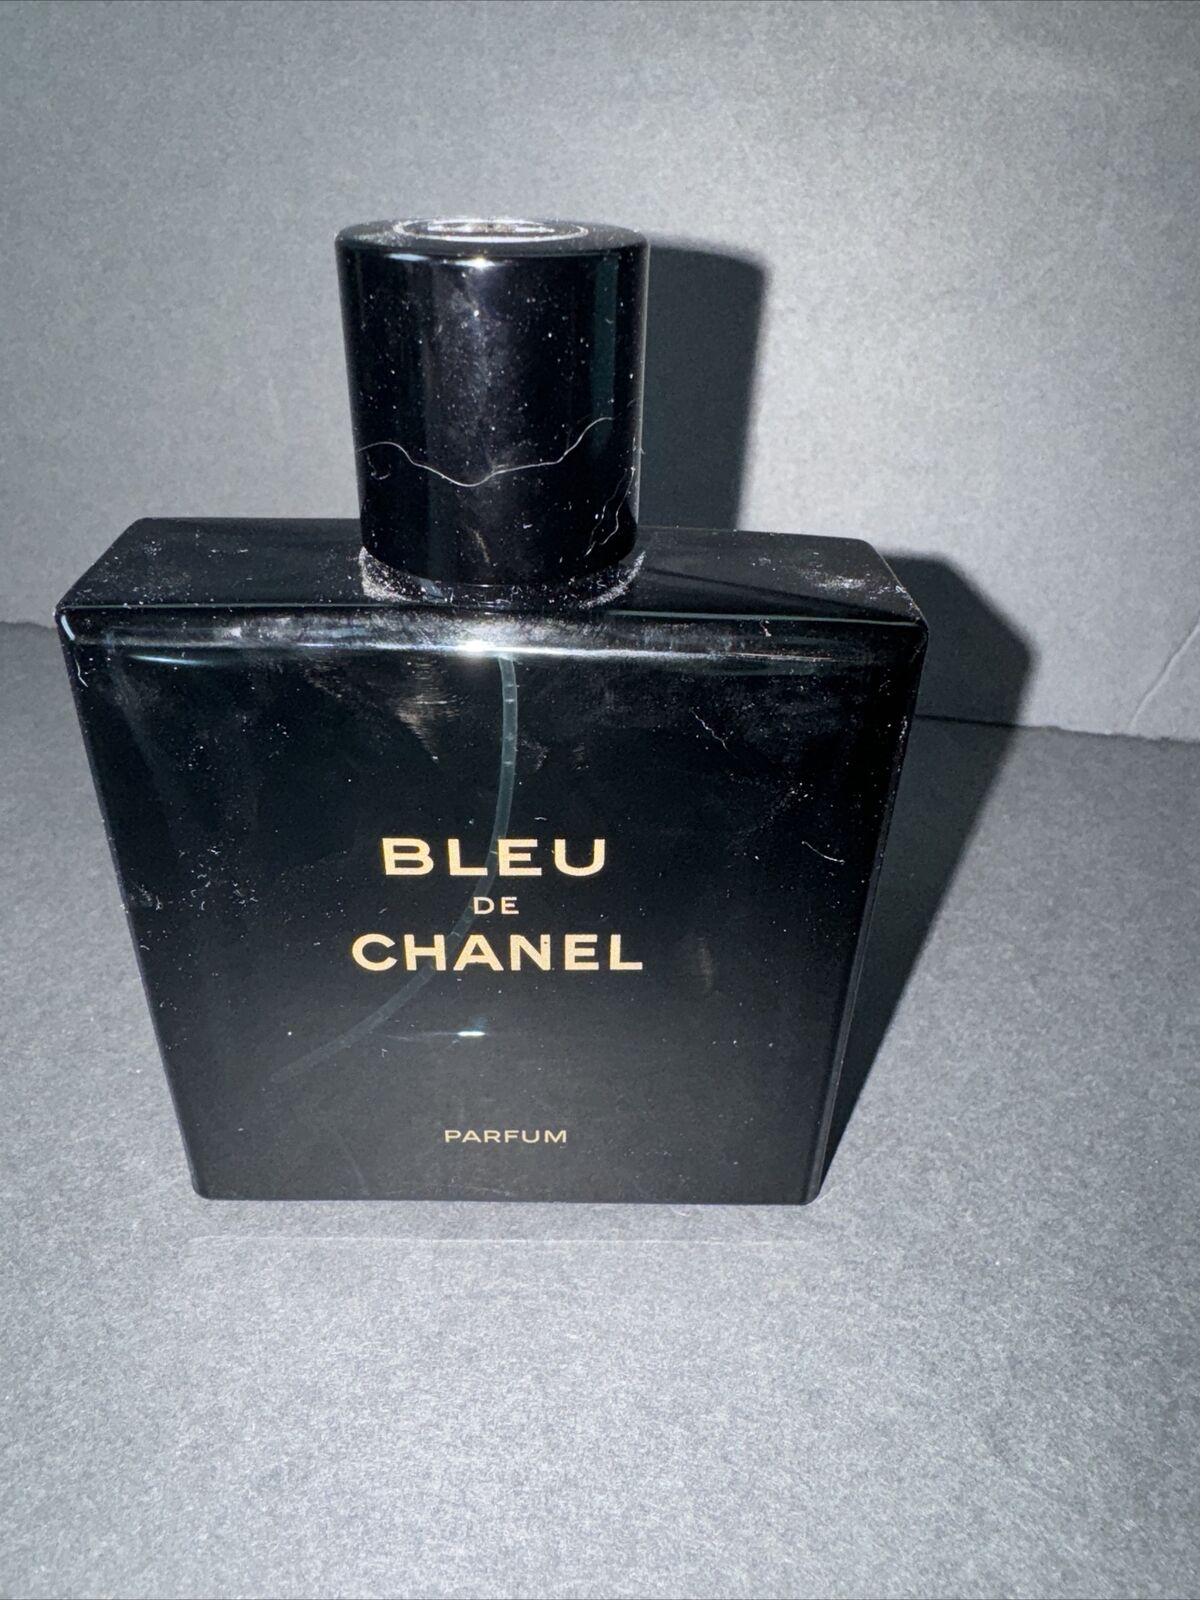 Bleu De Chanel Cologne Perfume Empty Bottle 3.4 Oz 100 ML Magnetic Cap